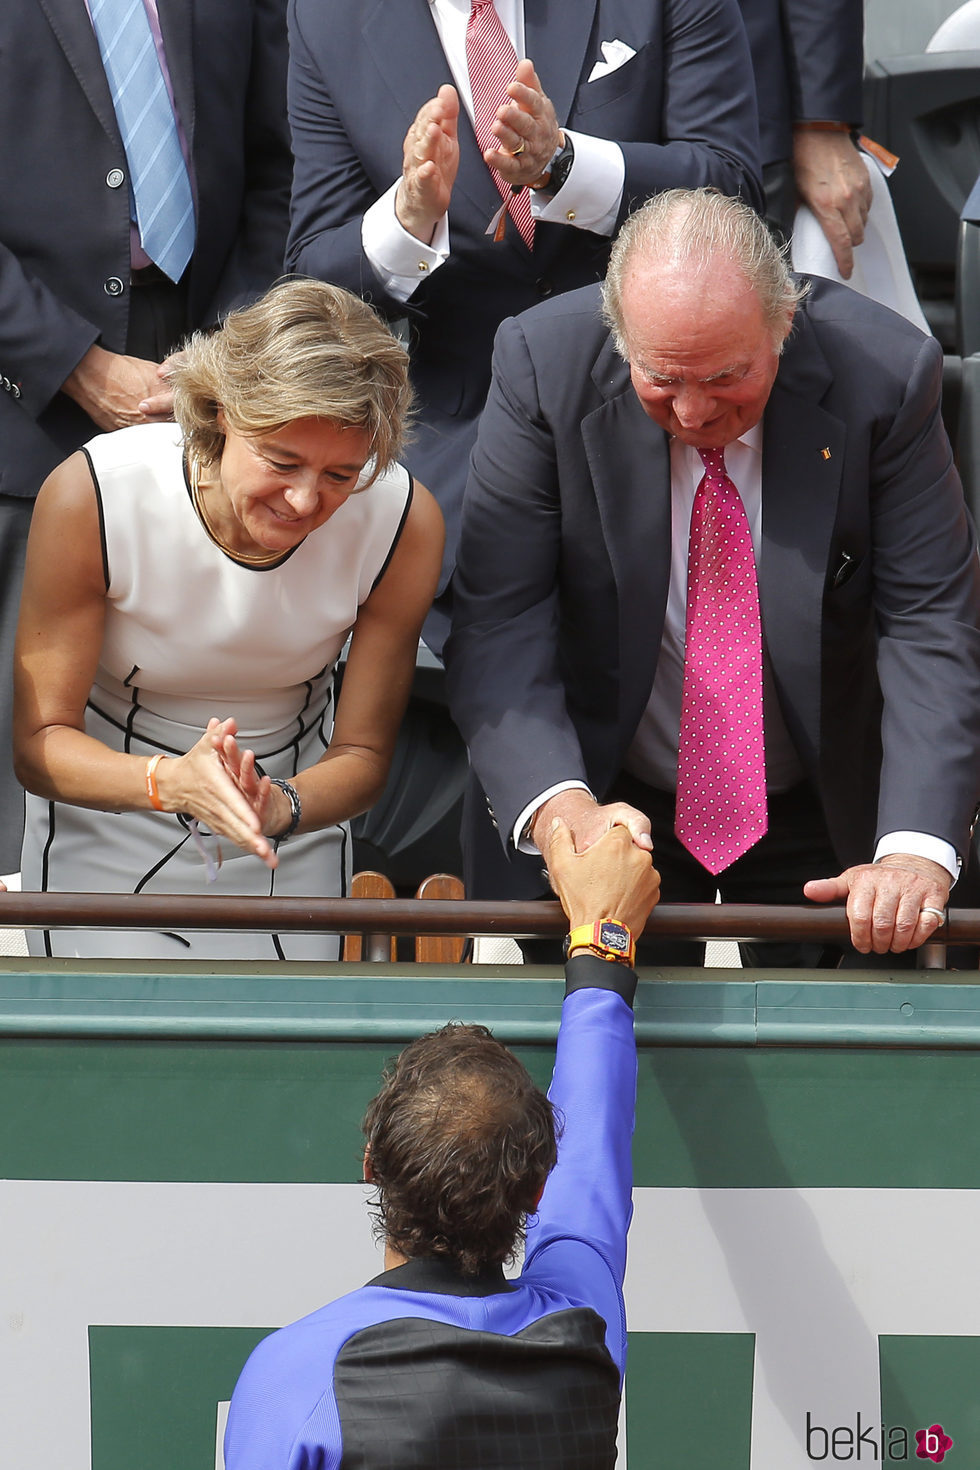 El Rey Juan Carlos felicitando a Rafa Nadal tras ganar Roland Garros 2017